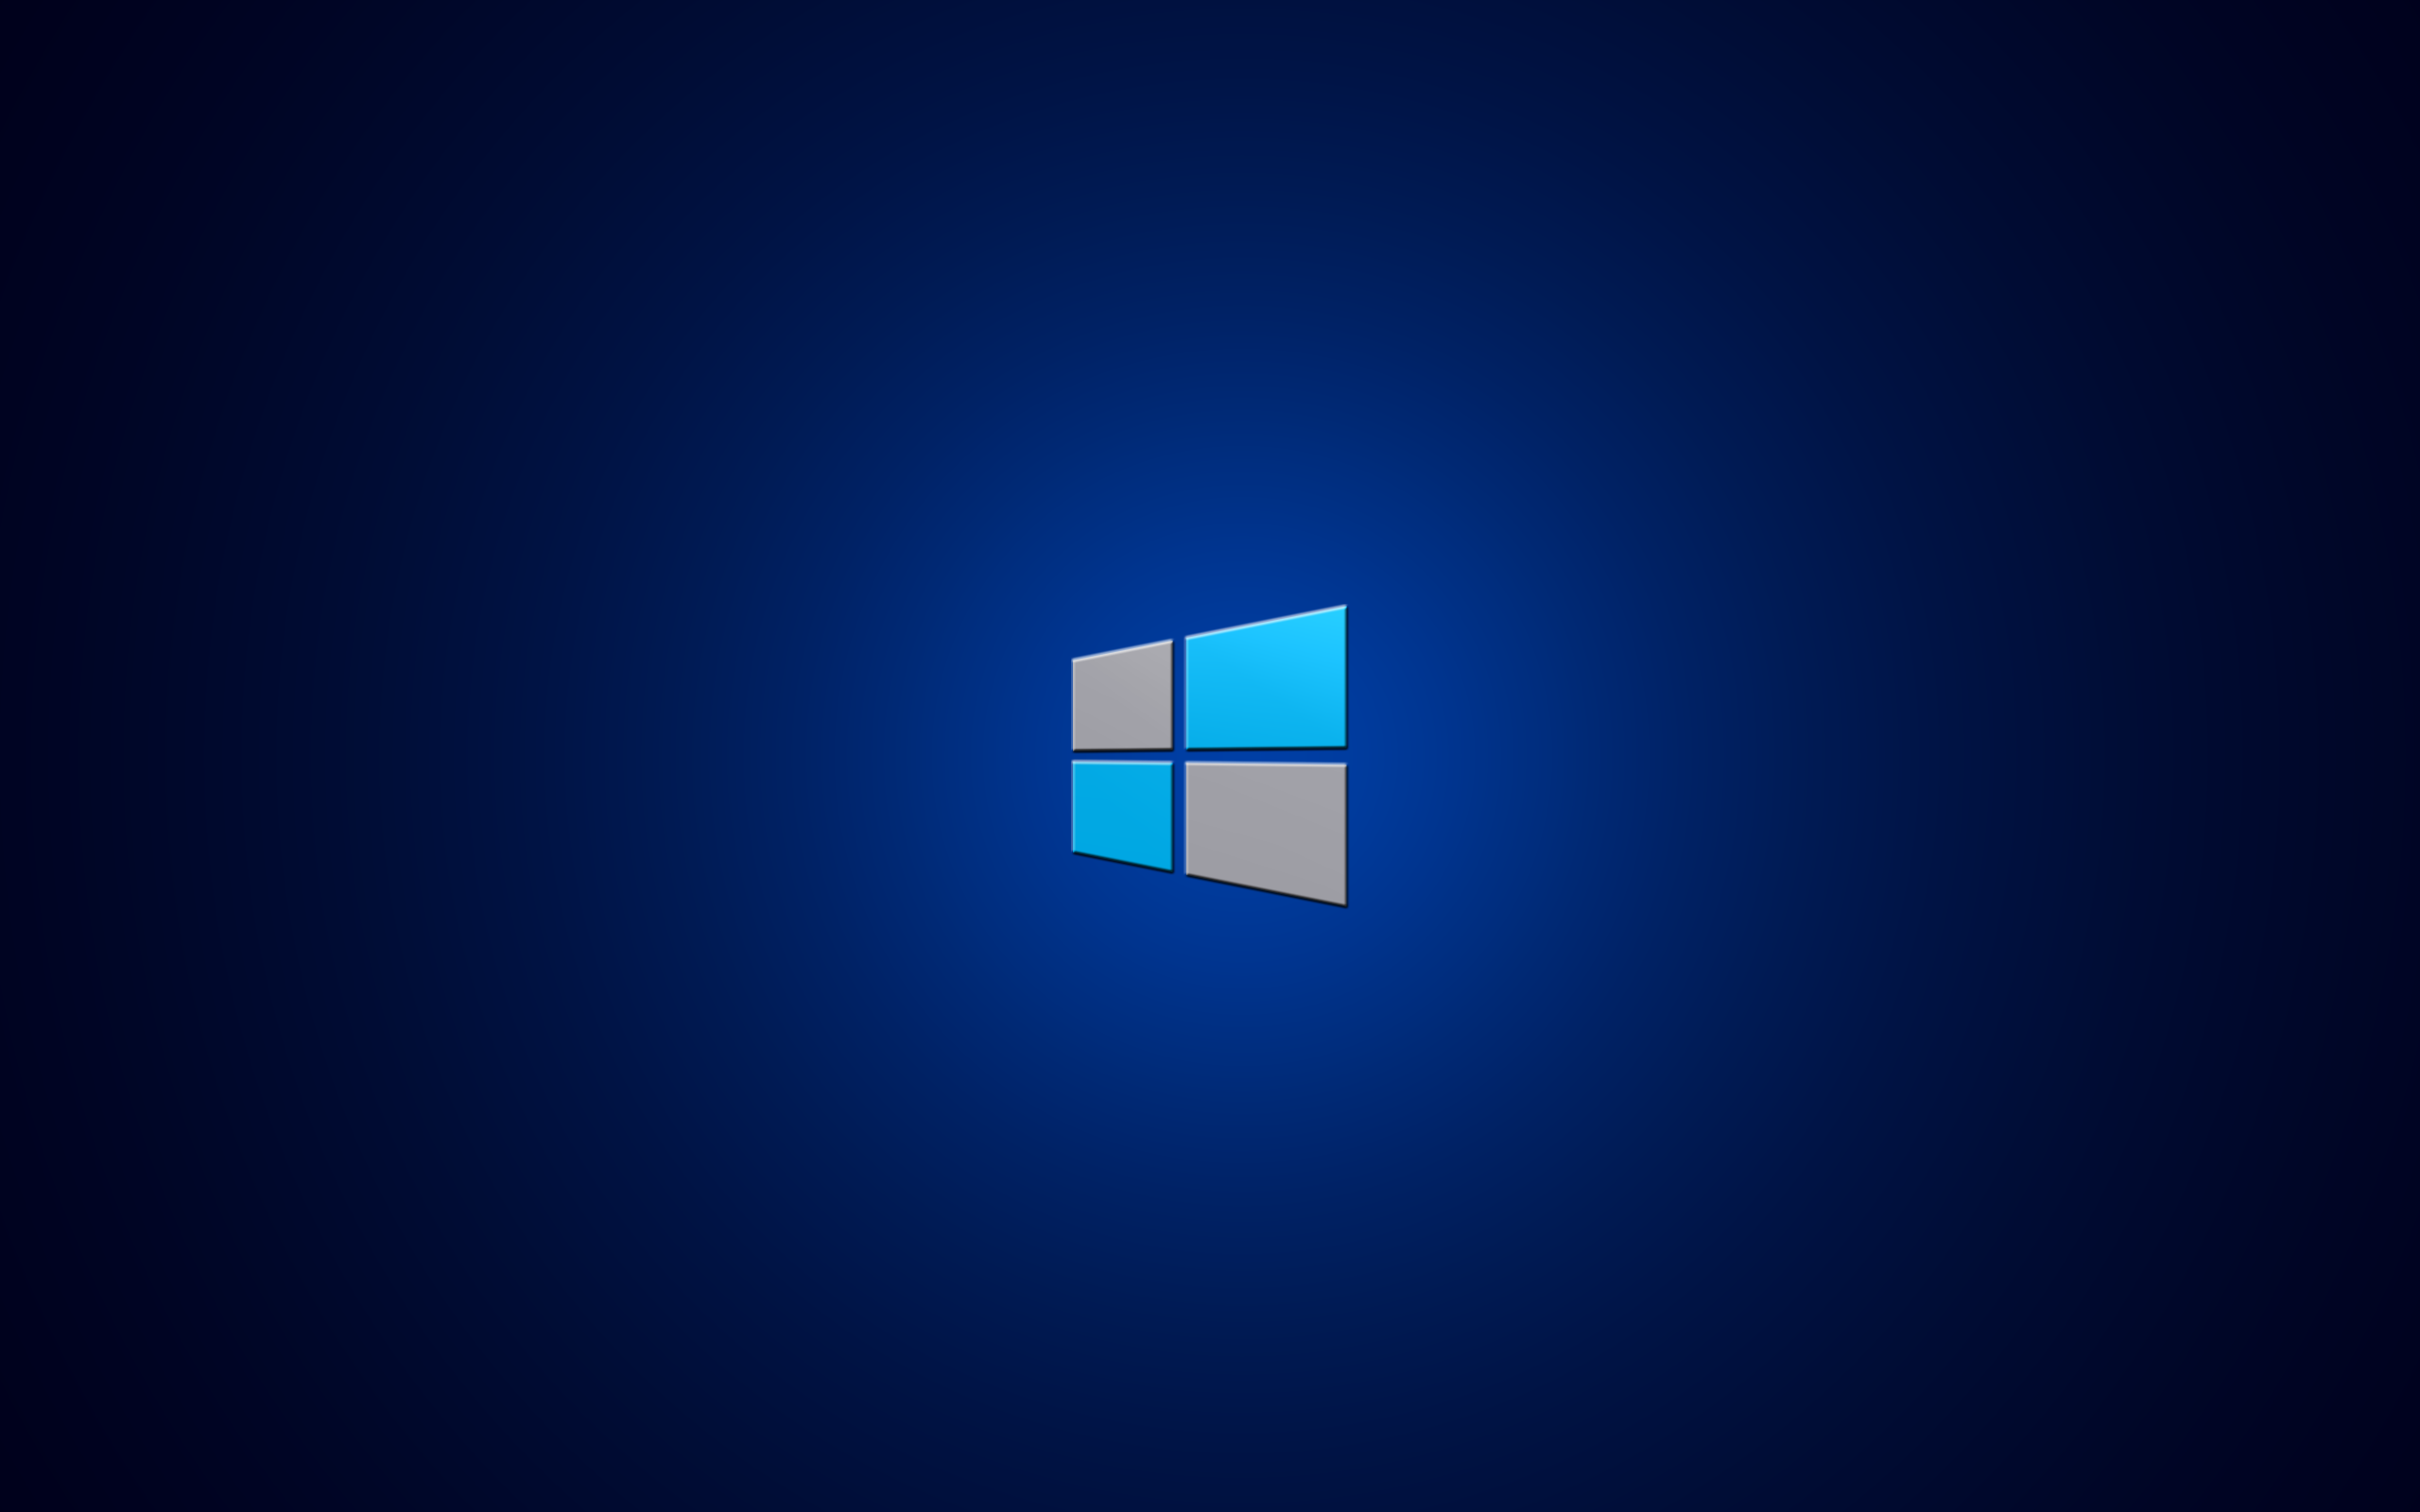 The new Windows 8 logo wallpaper 2560x1600 1855 WallpaperUP 2560x1600